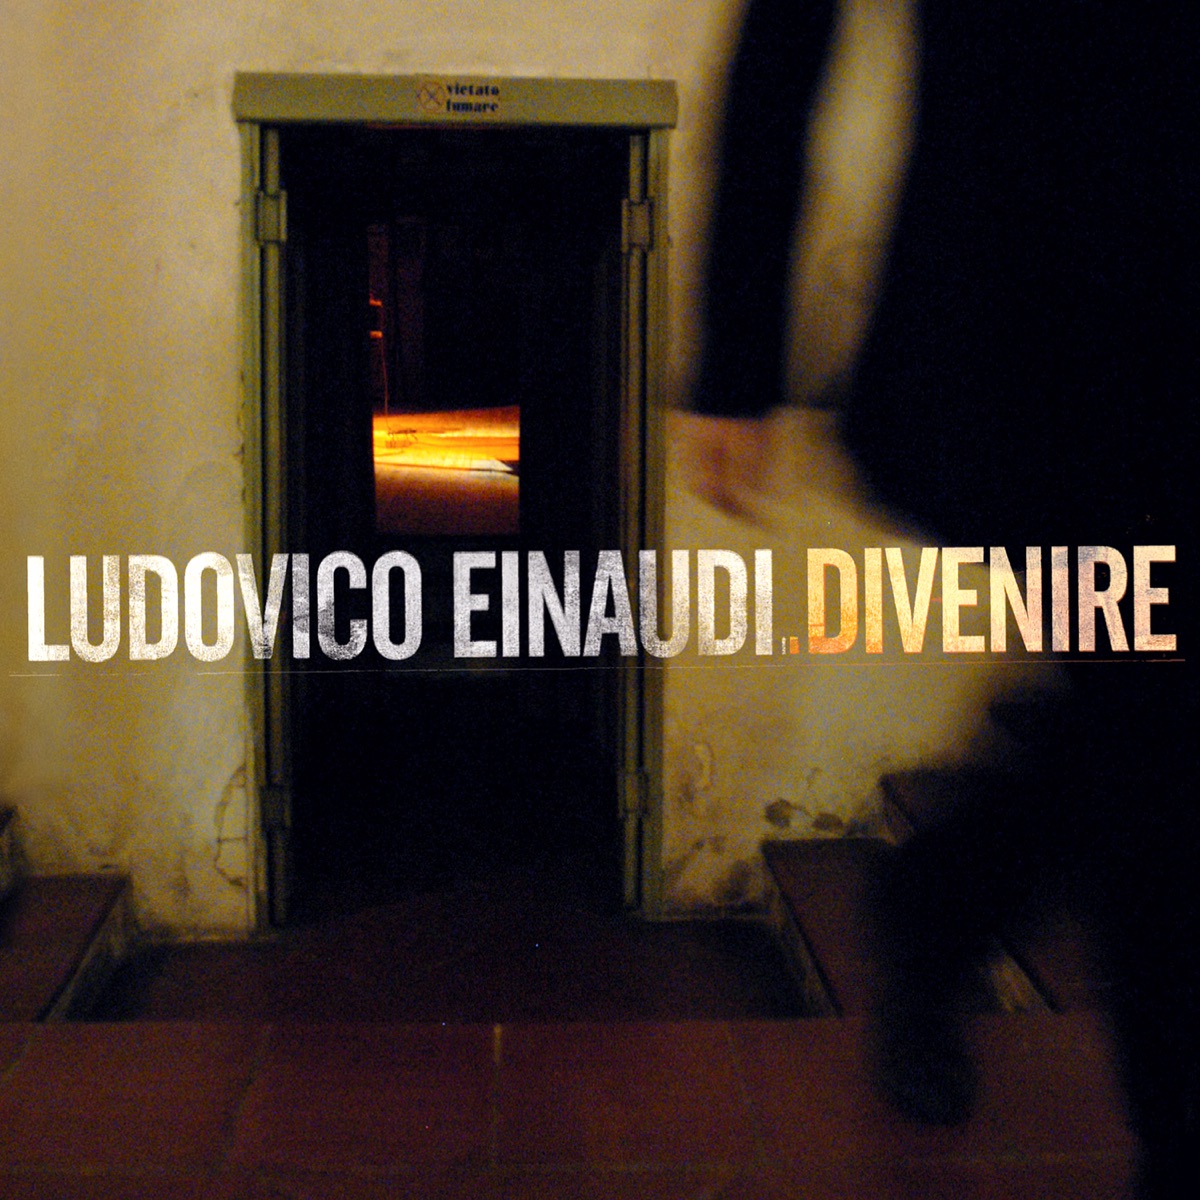 Ludovico Einaudi - Underwater